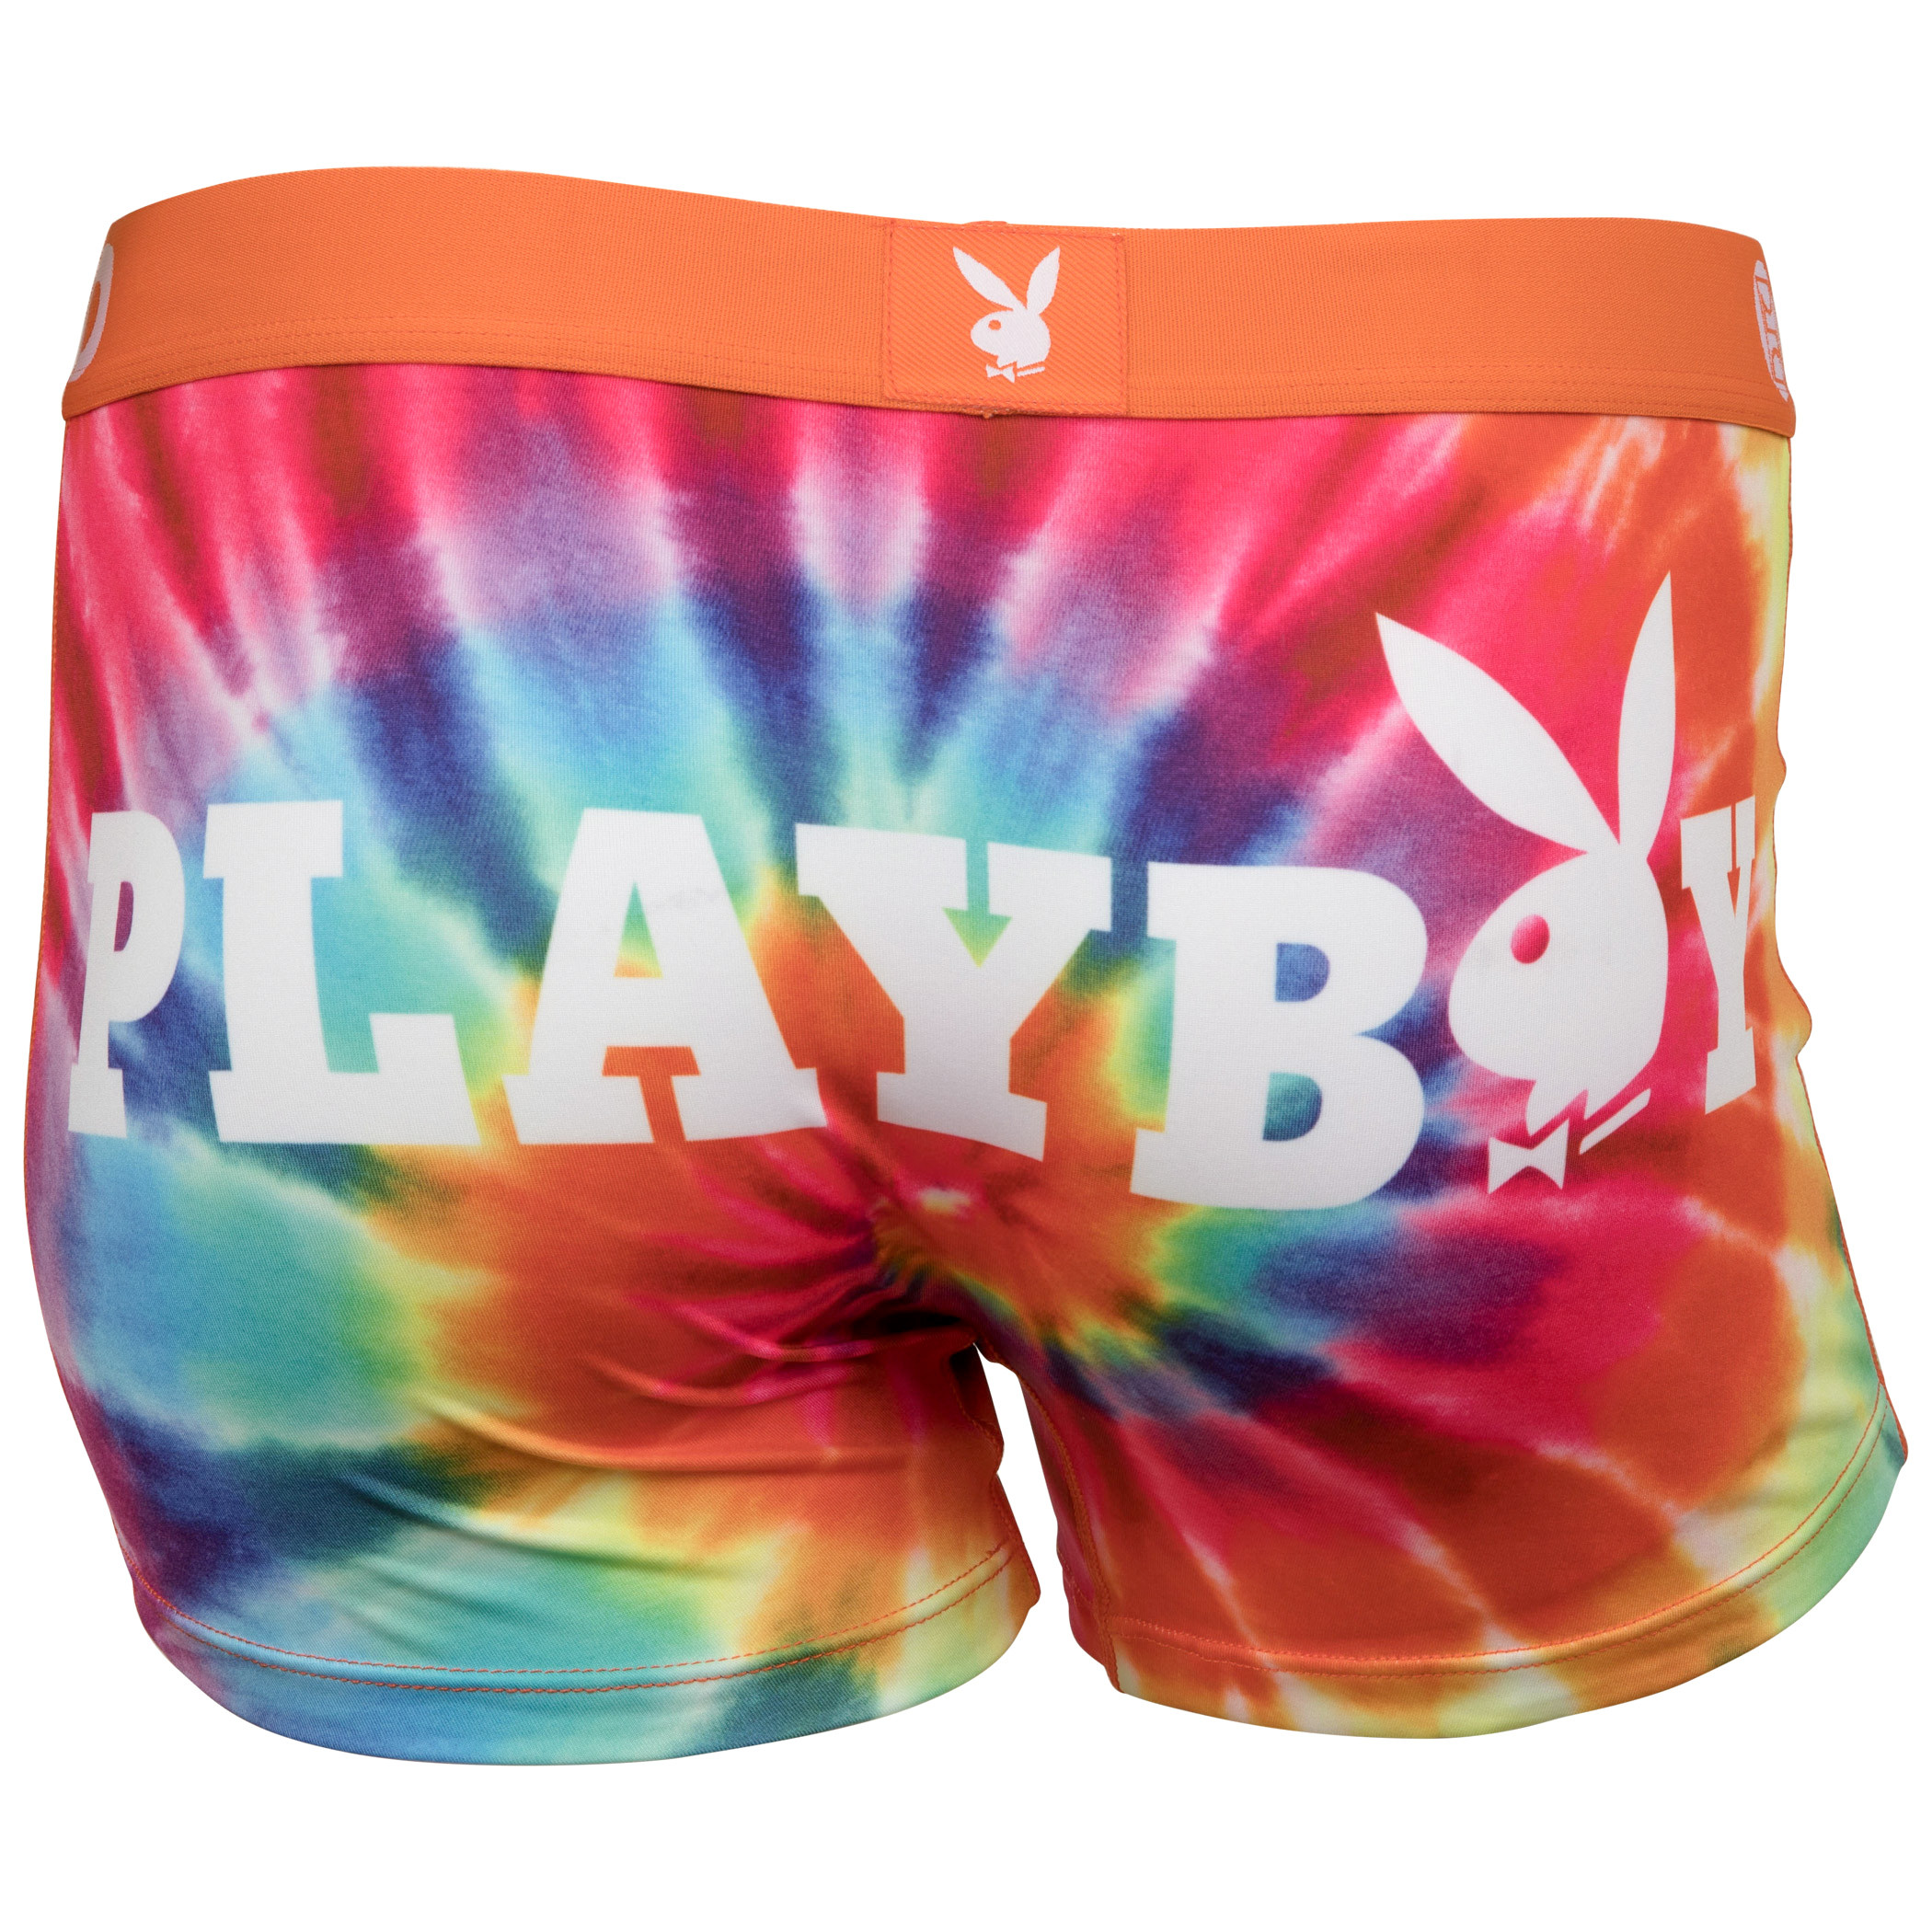 Rainbow Boy Short - PSD Underwear